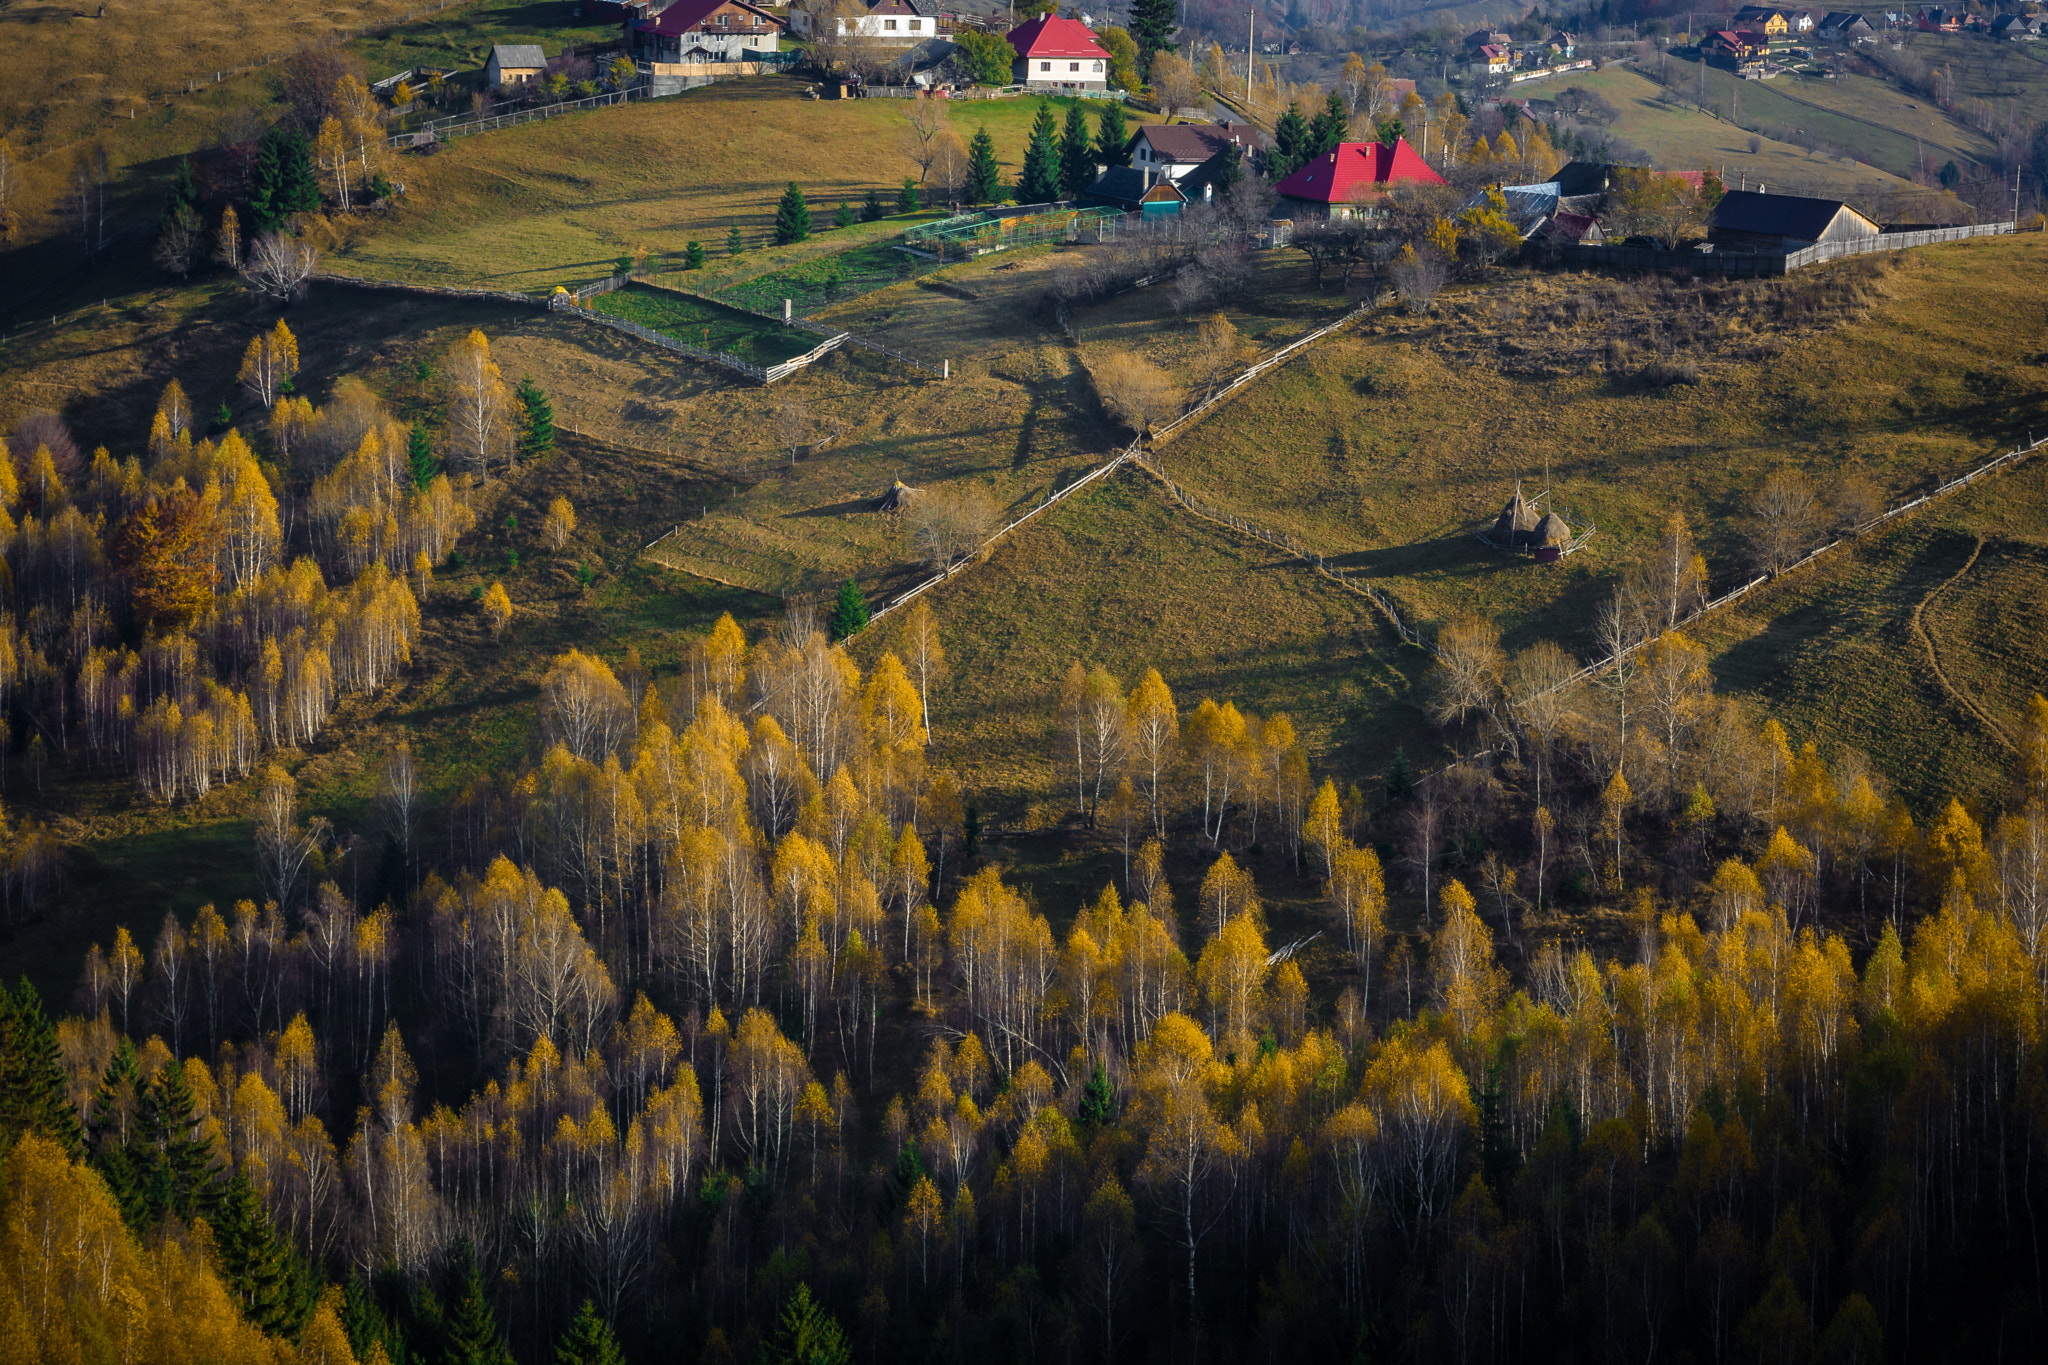 AF Zoom-Nikkor 35-105mm f/3.5-4.5 sample photo. Romanian landscape photography